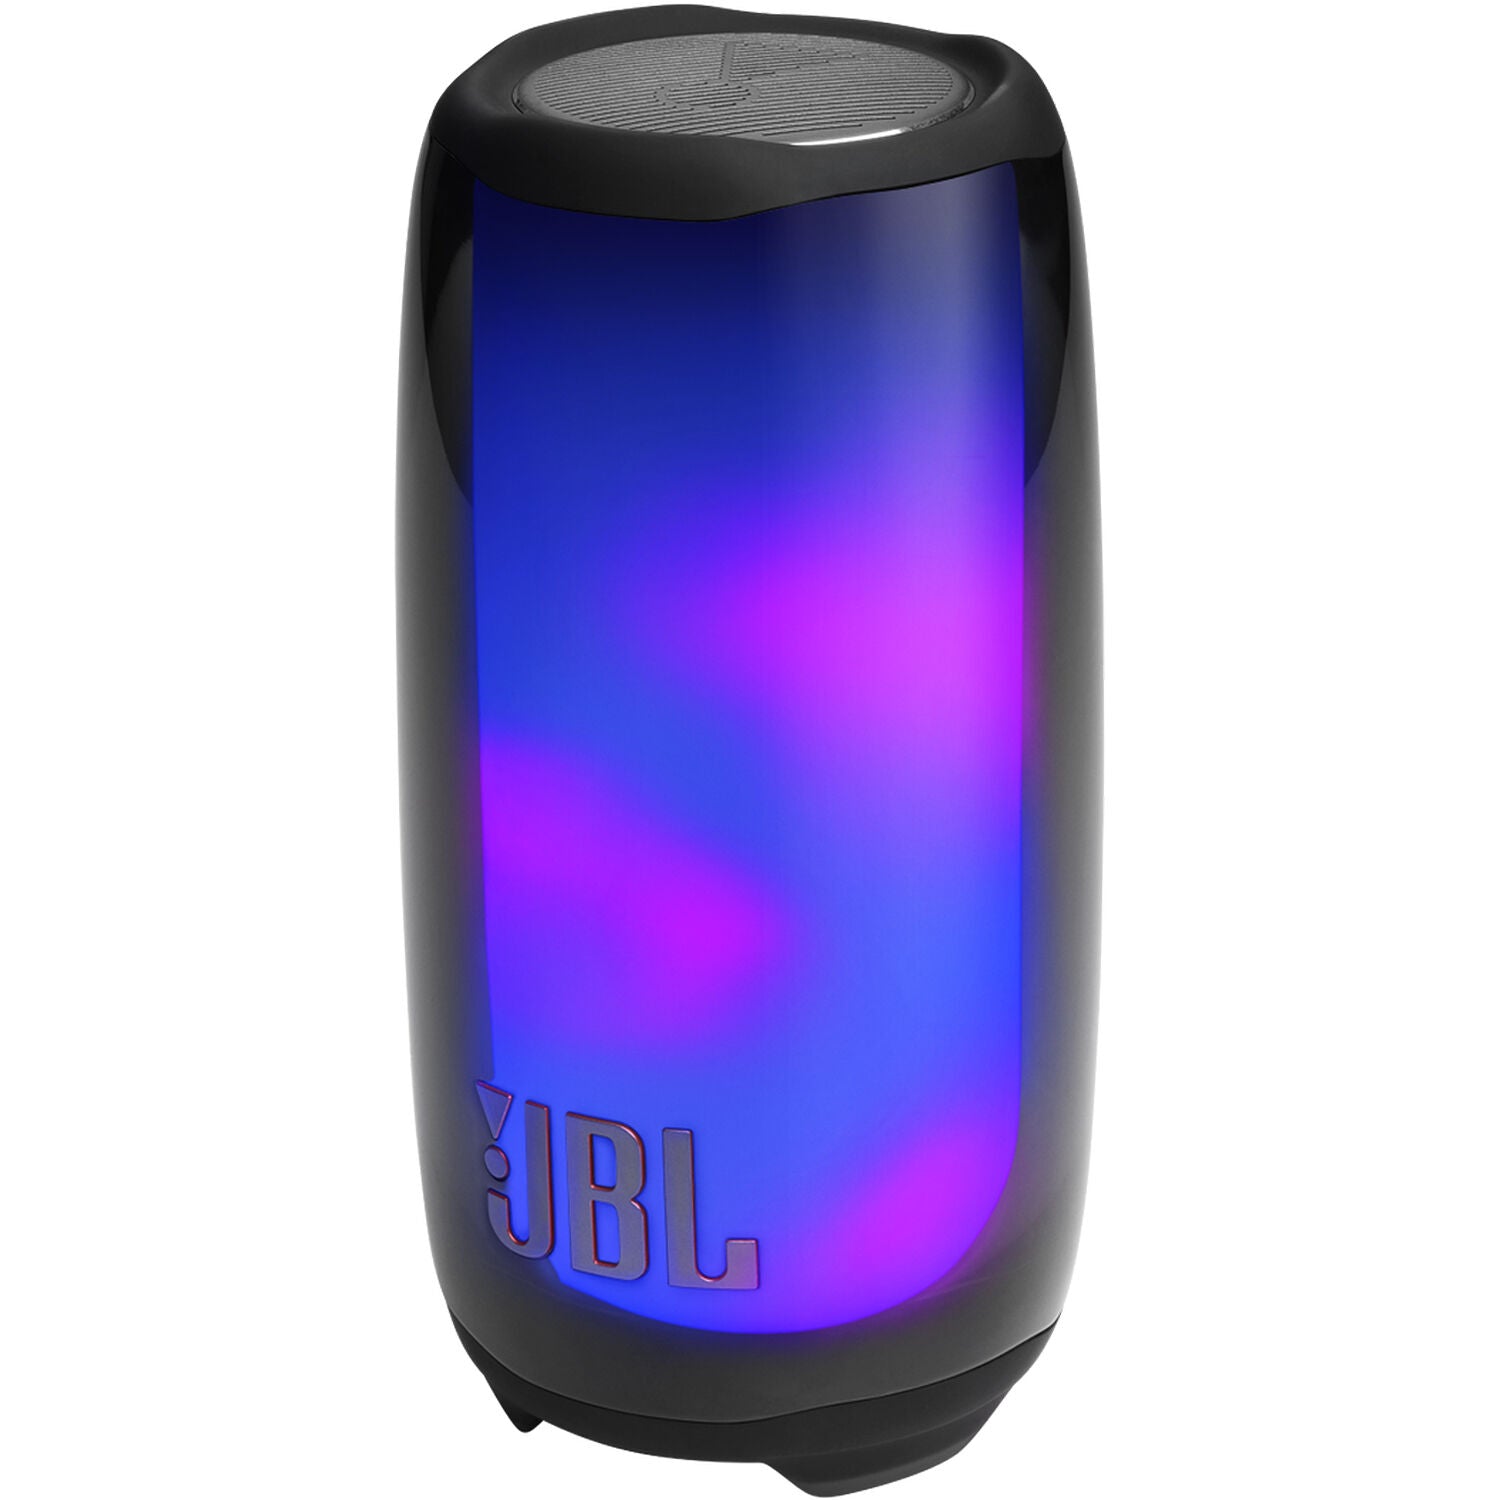 JBLPULSE5BLKAM-Z Pulse 5 Wireless Portable Bluetooth Tabletop Wireless Speaker, Black - Certified Refurbished